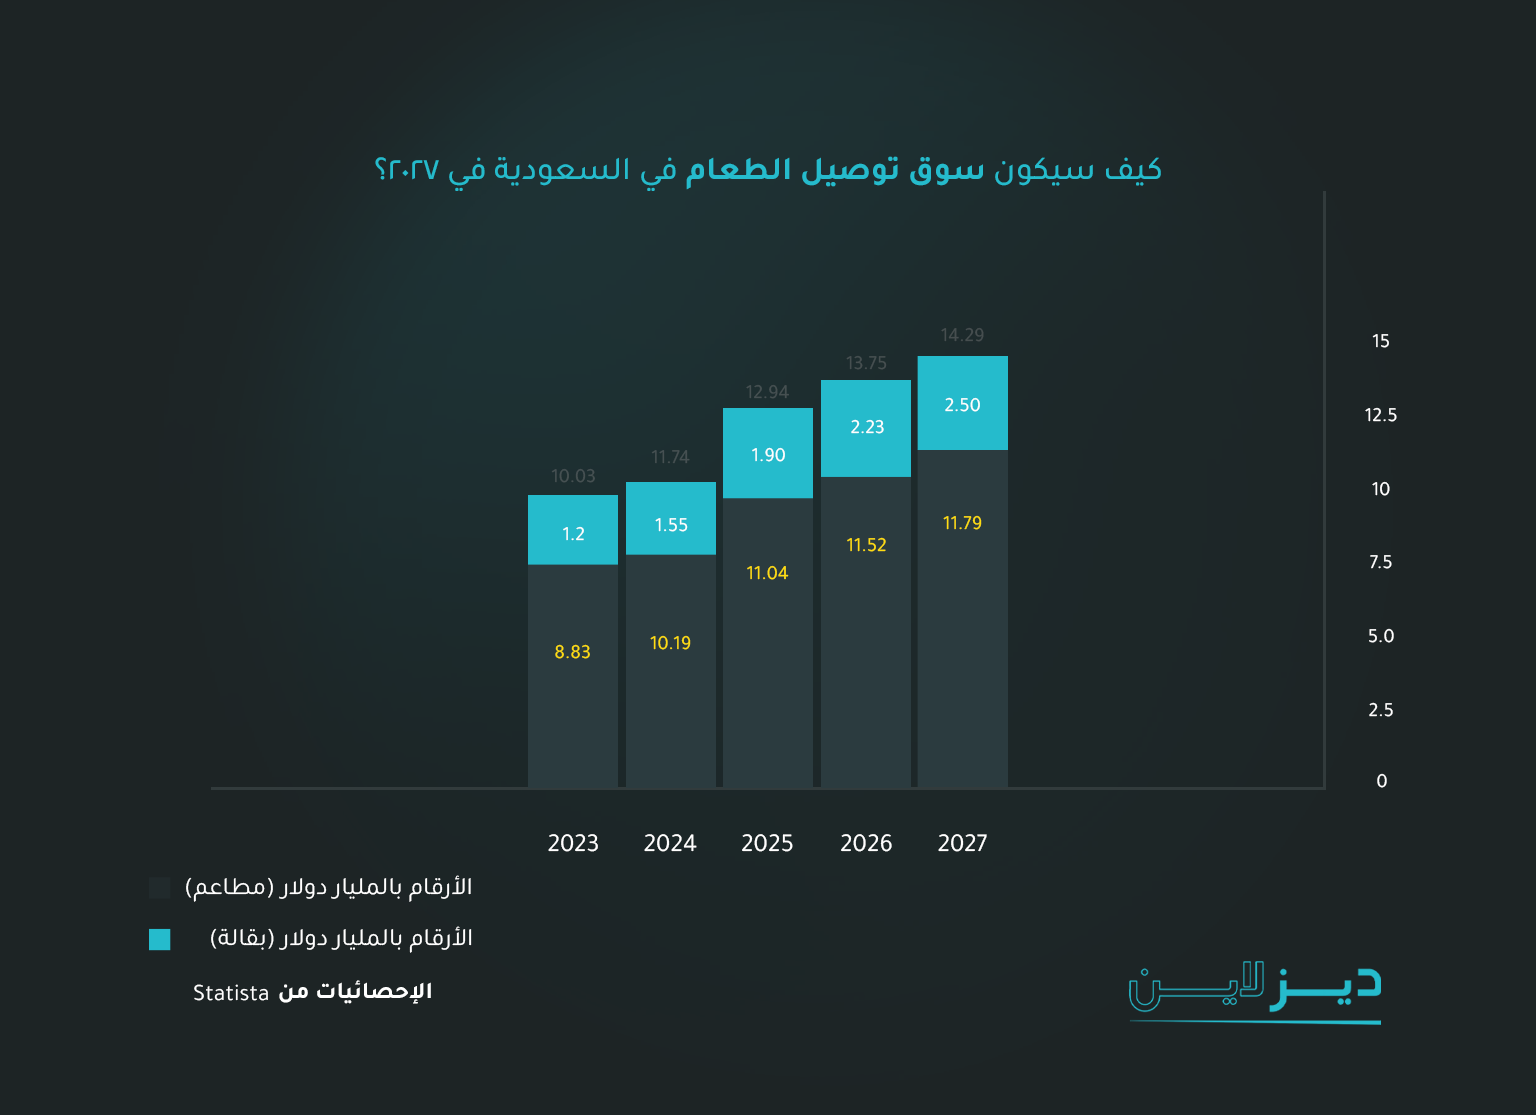 كيف سيكون سوق توصيل الطعام في السعودية في 2027؟